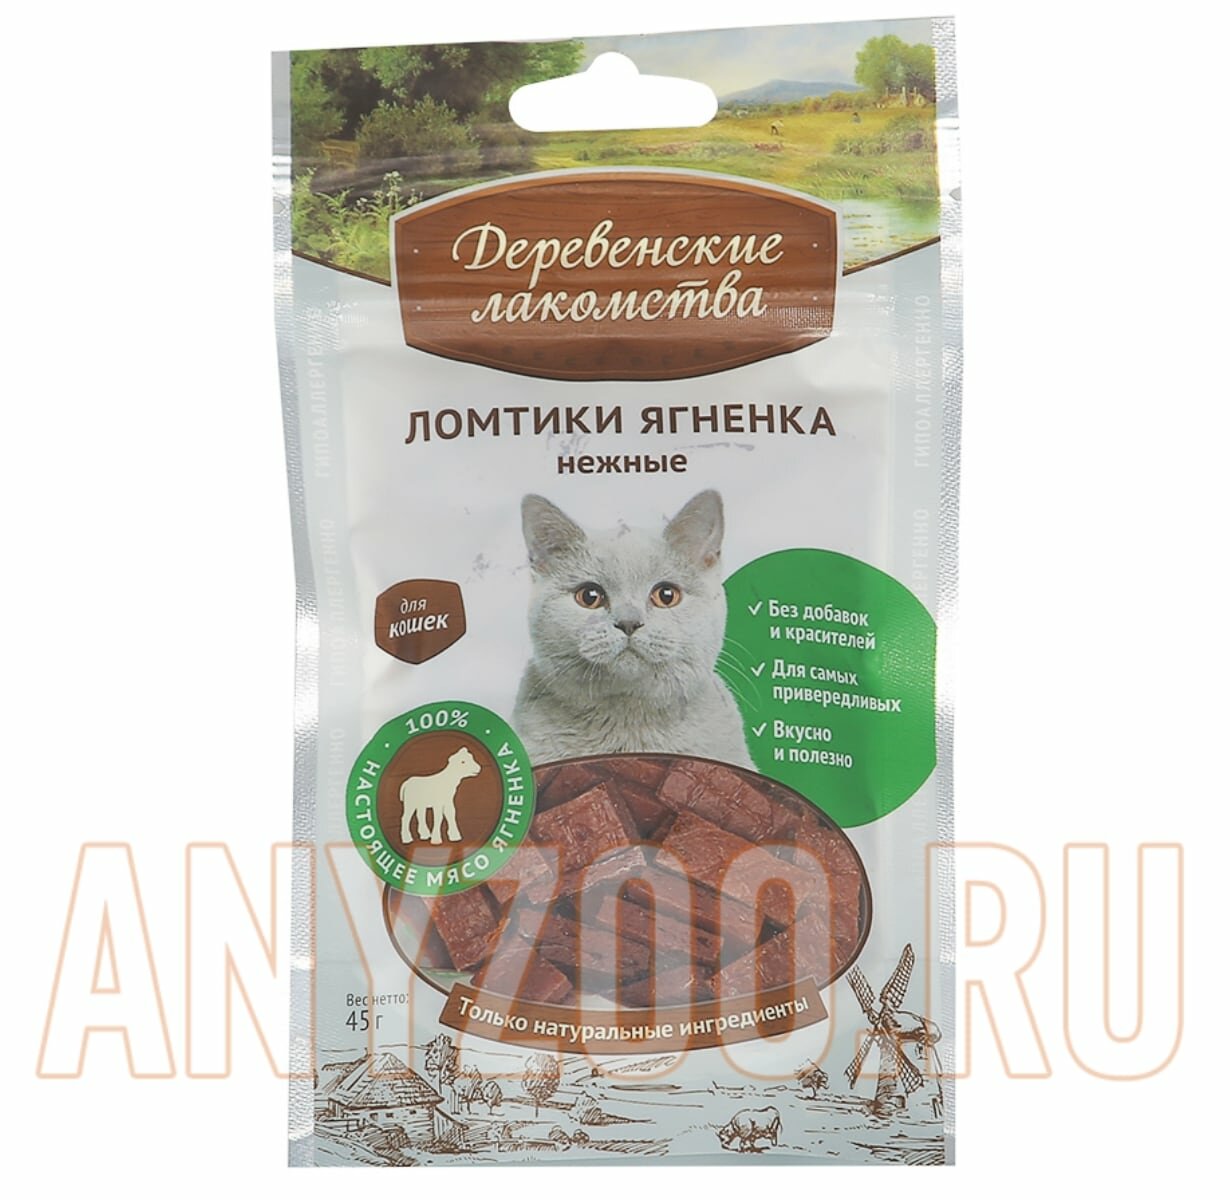 Деревенские лакомства для кошек Ломтики ягненка нежные 45 гр